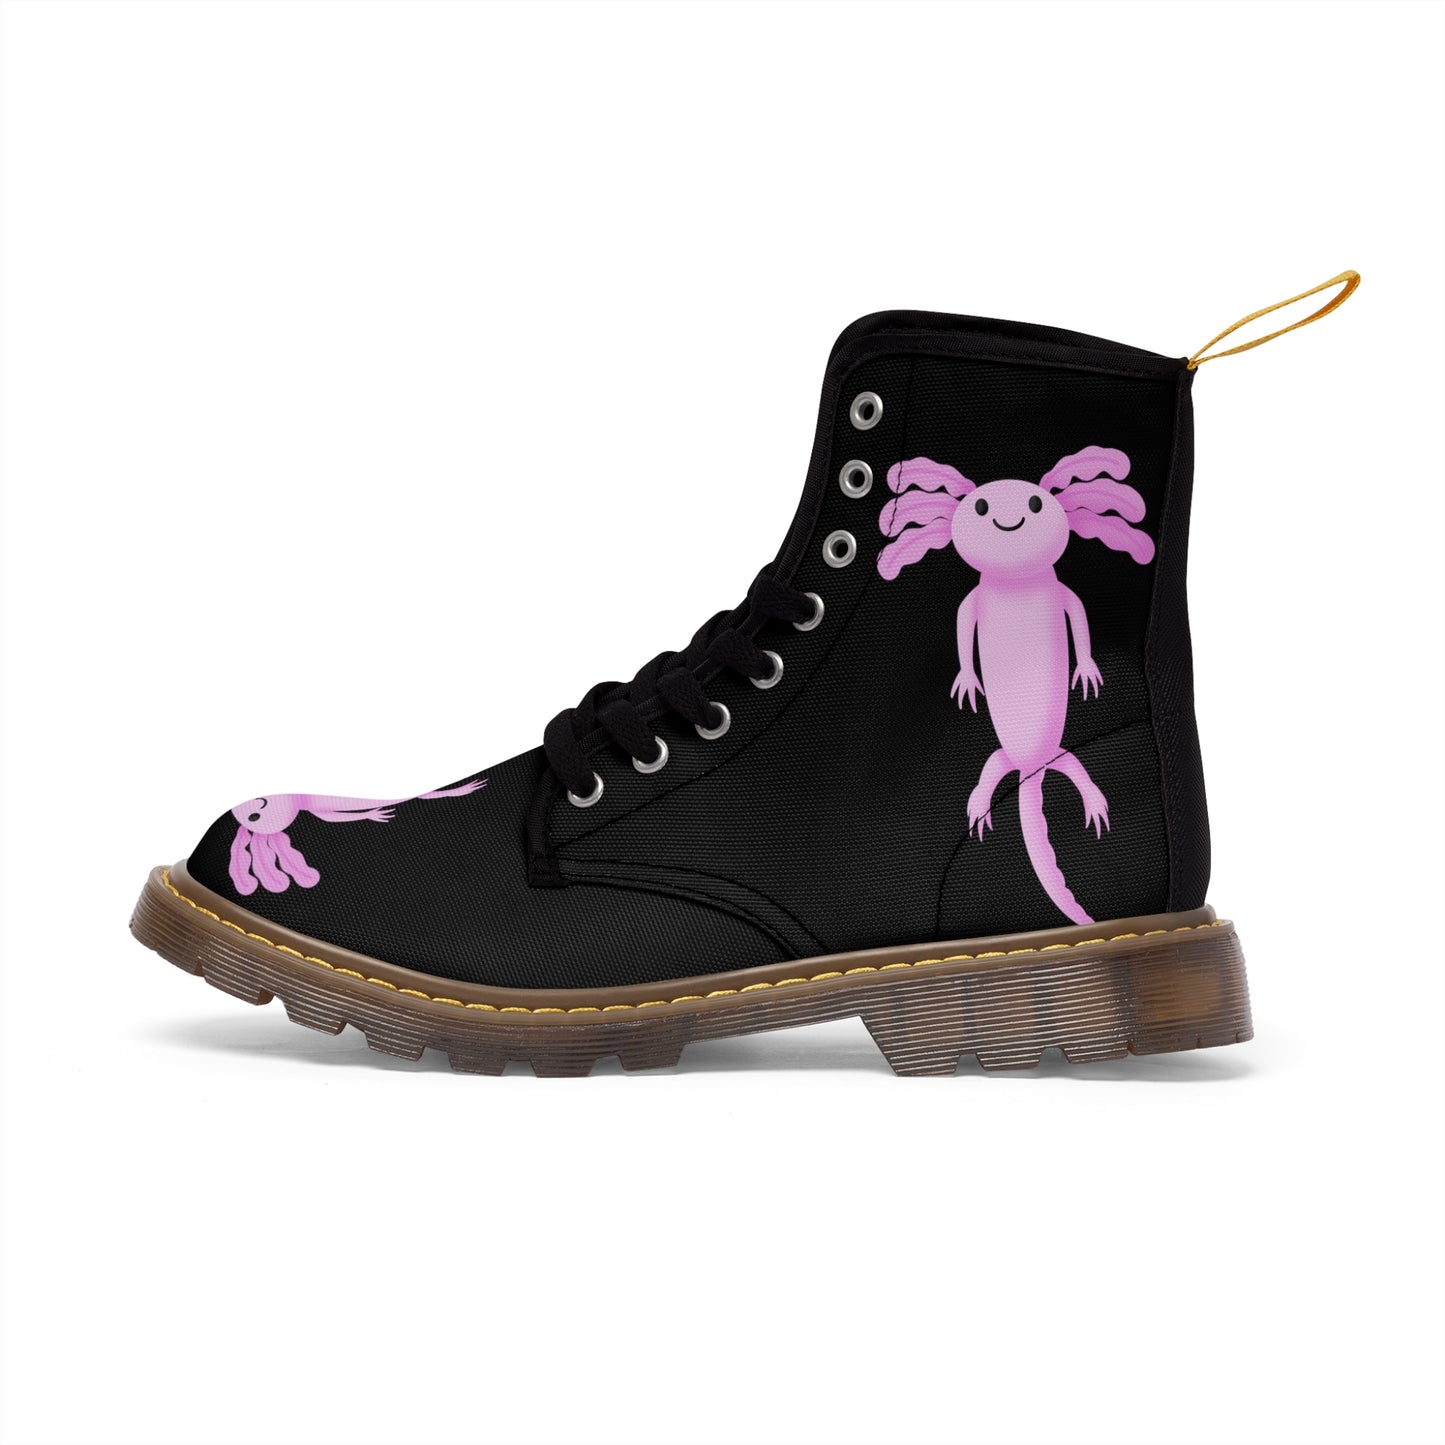 Men's Canvas Boots  "Axolotl"